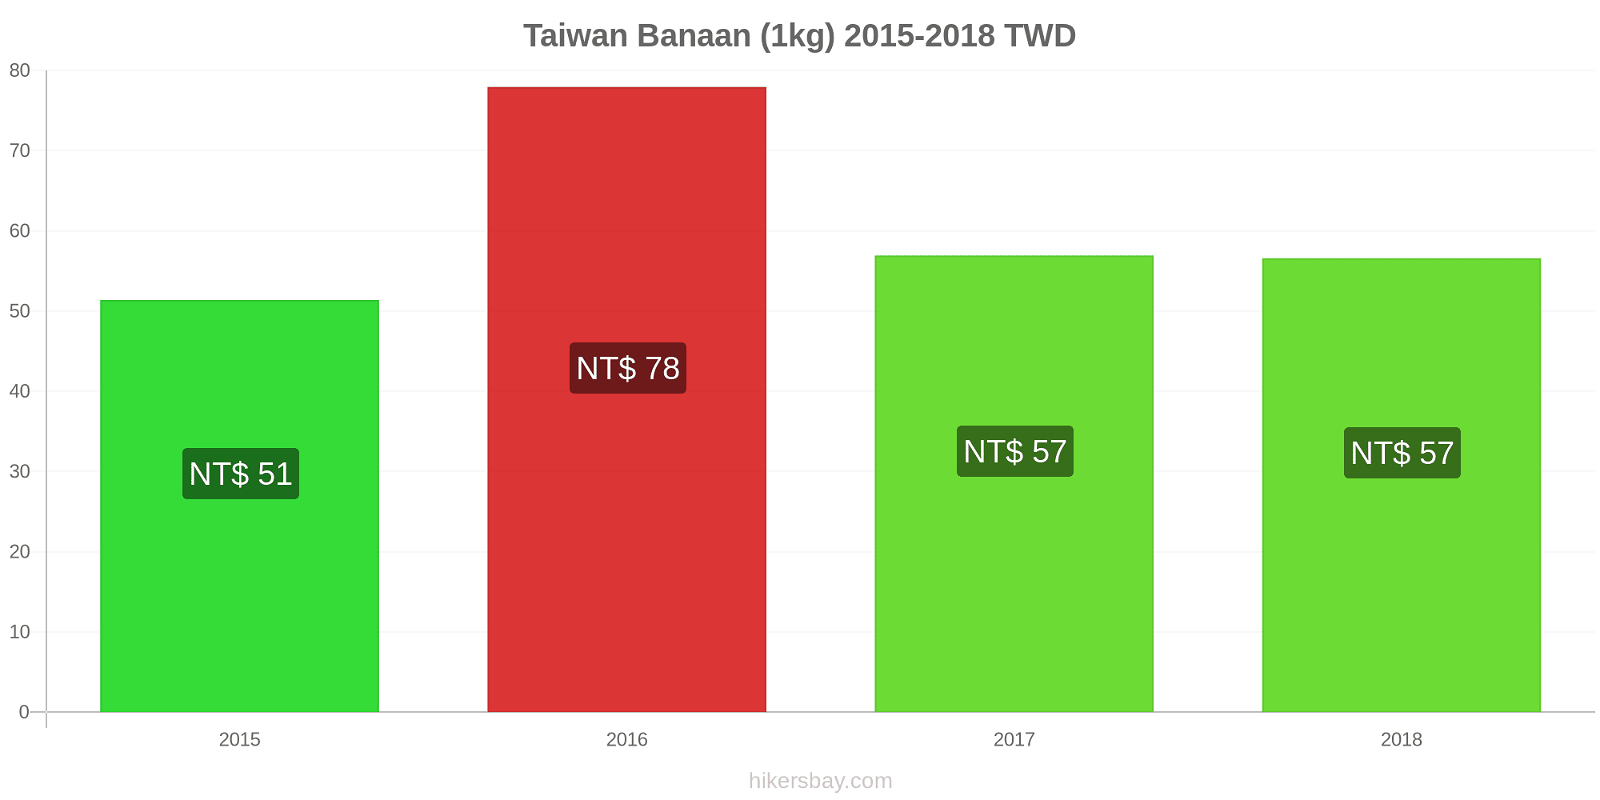 Taiwan prijswijzigingen Bananen (1kg) hikersbay.com